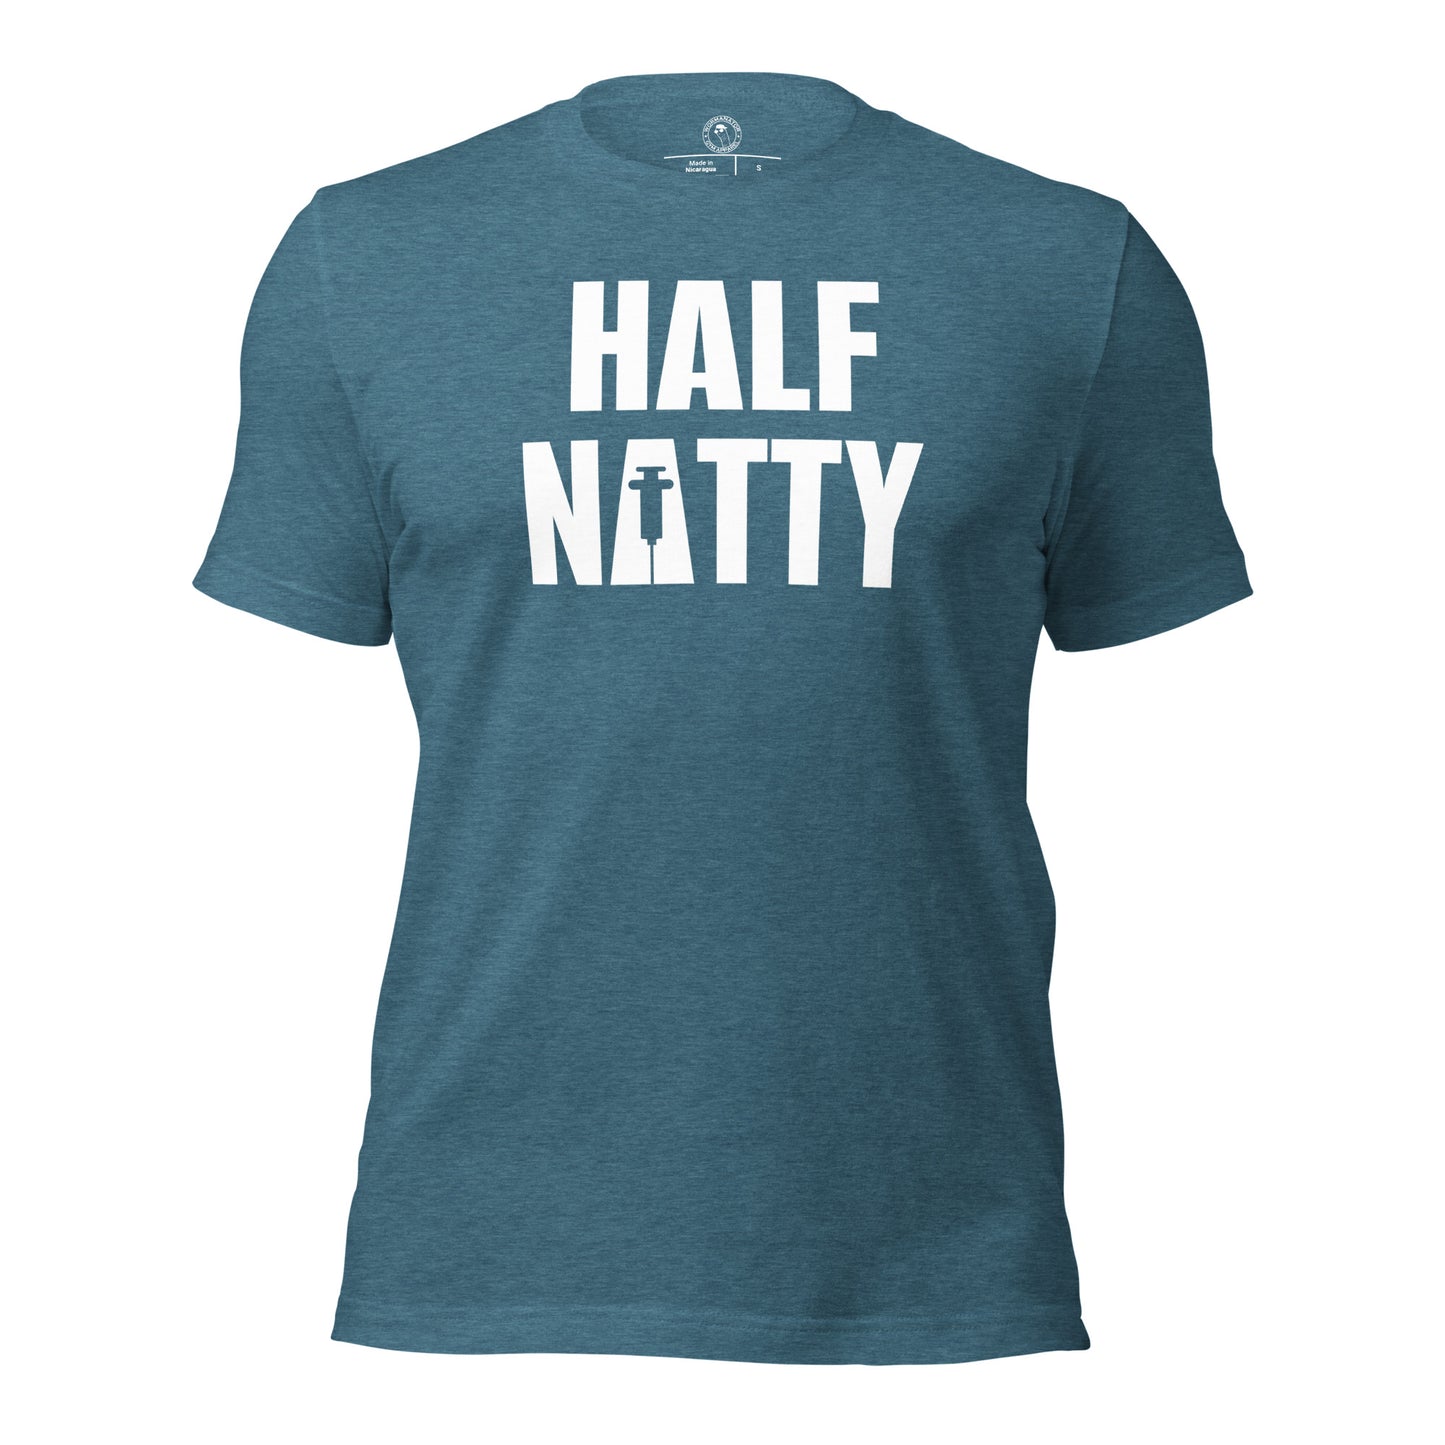 Half Natty T-Shirt in Heather Deep Teal